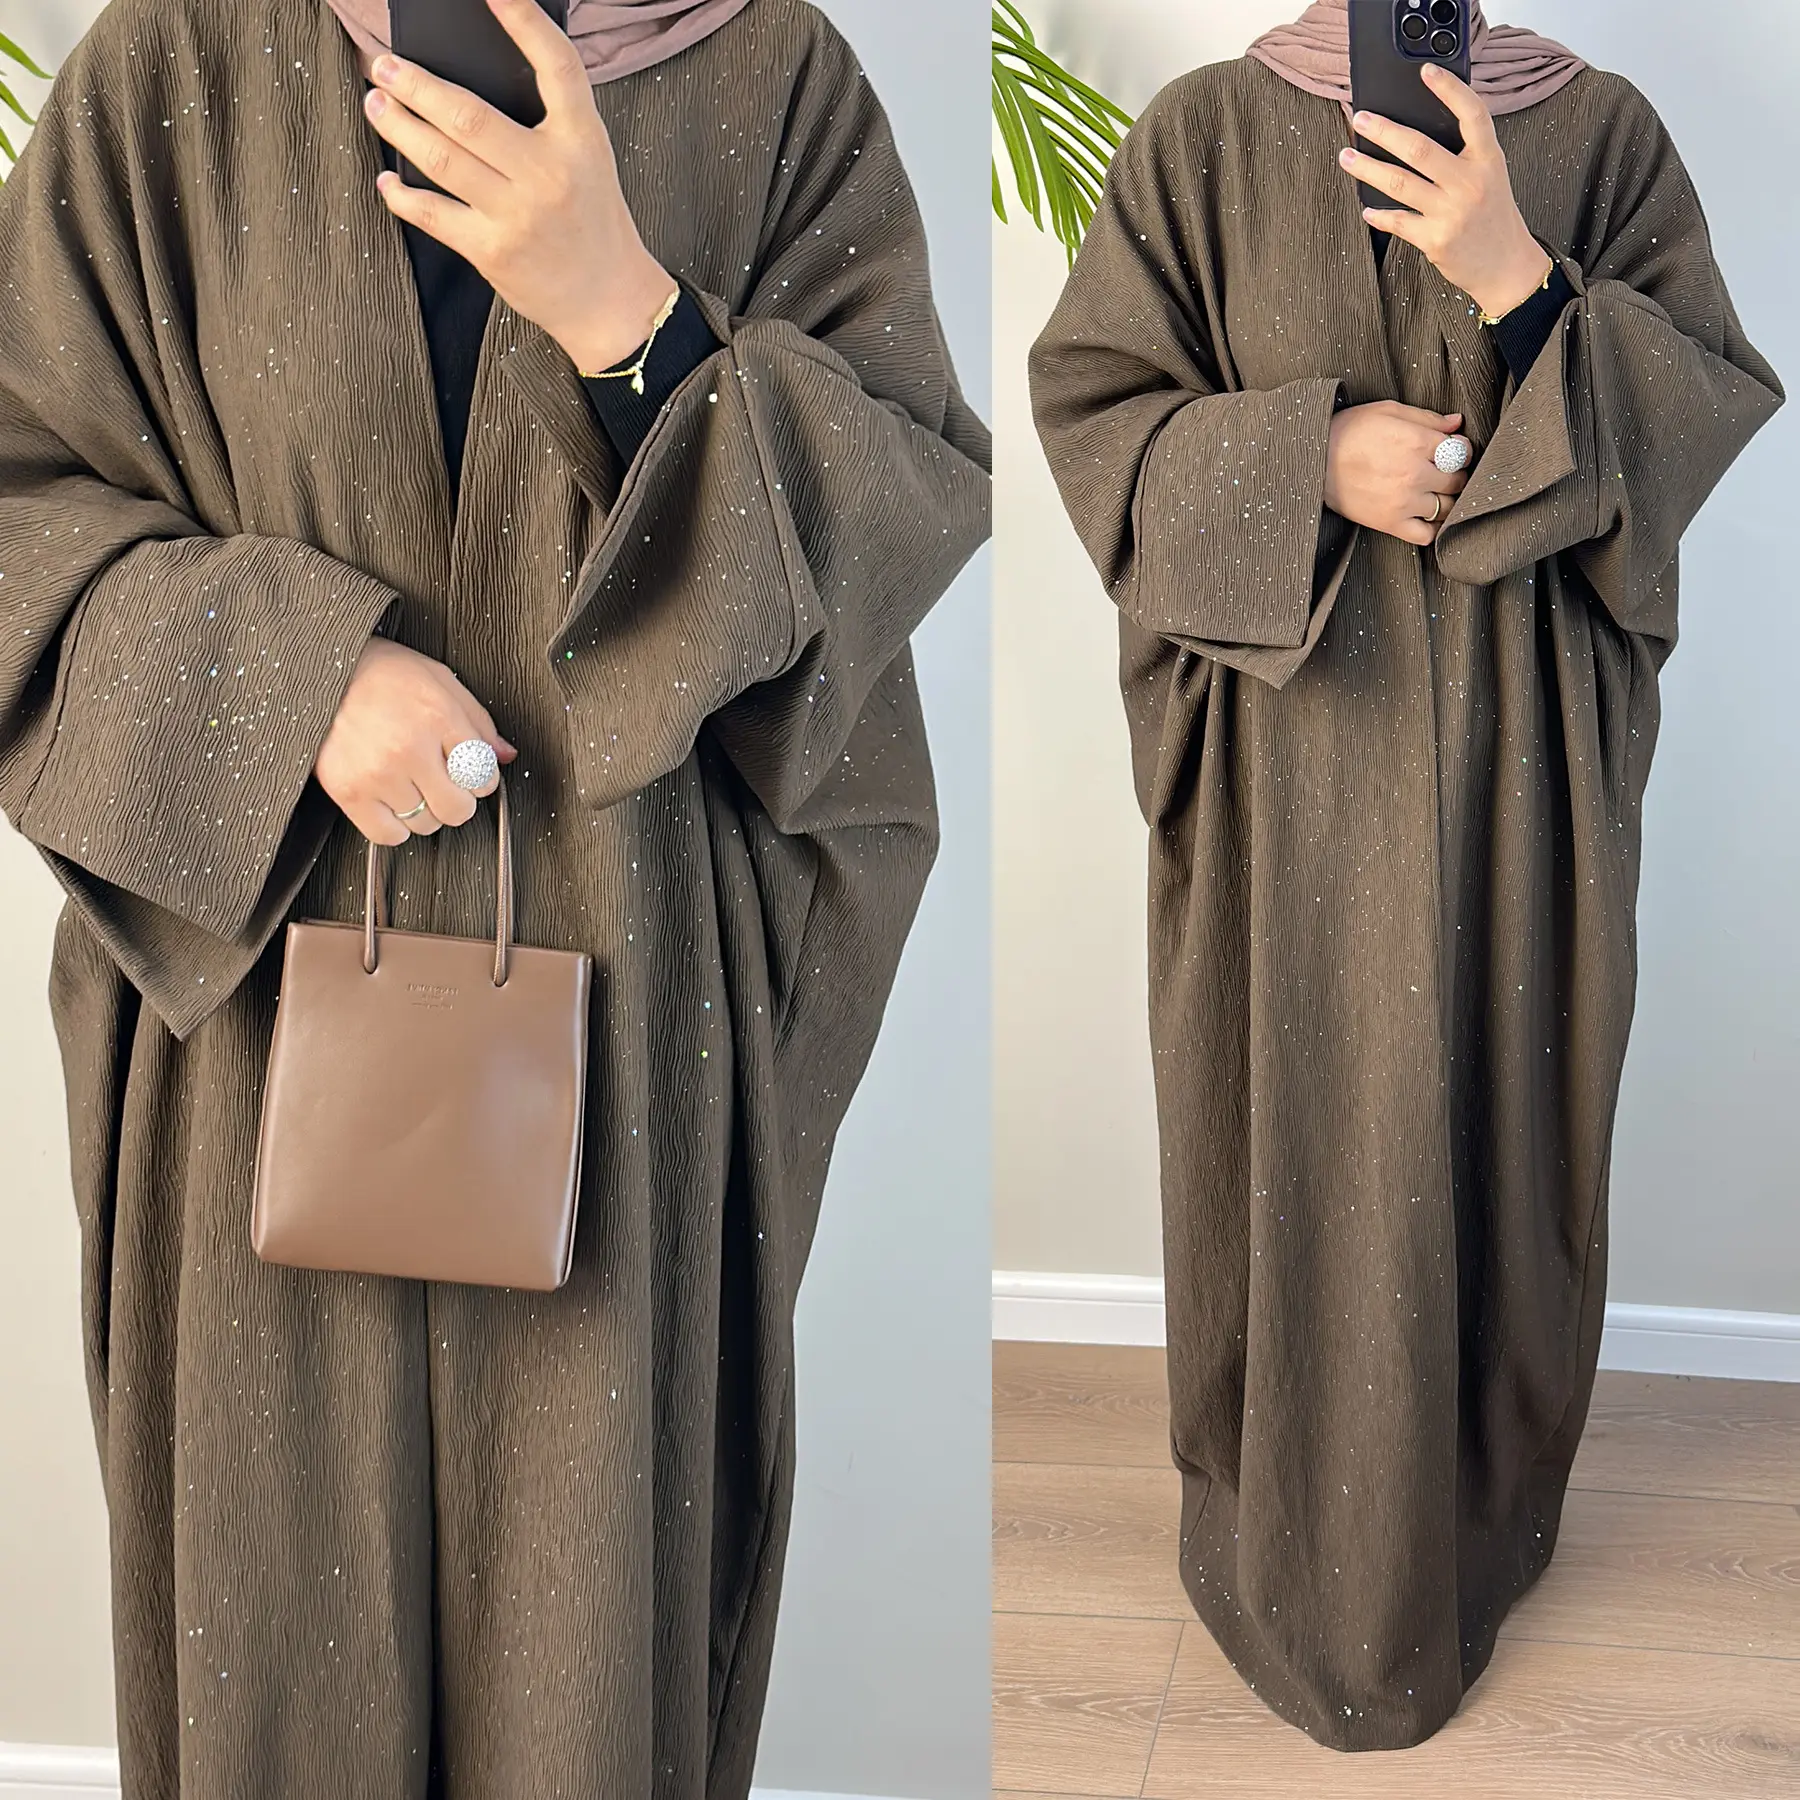 Mulheres muçulmanas Vestidos roupas mulheres maxi dress senhoras muçulmanas tradicionais muçulmanas clothing & accessories